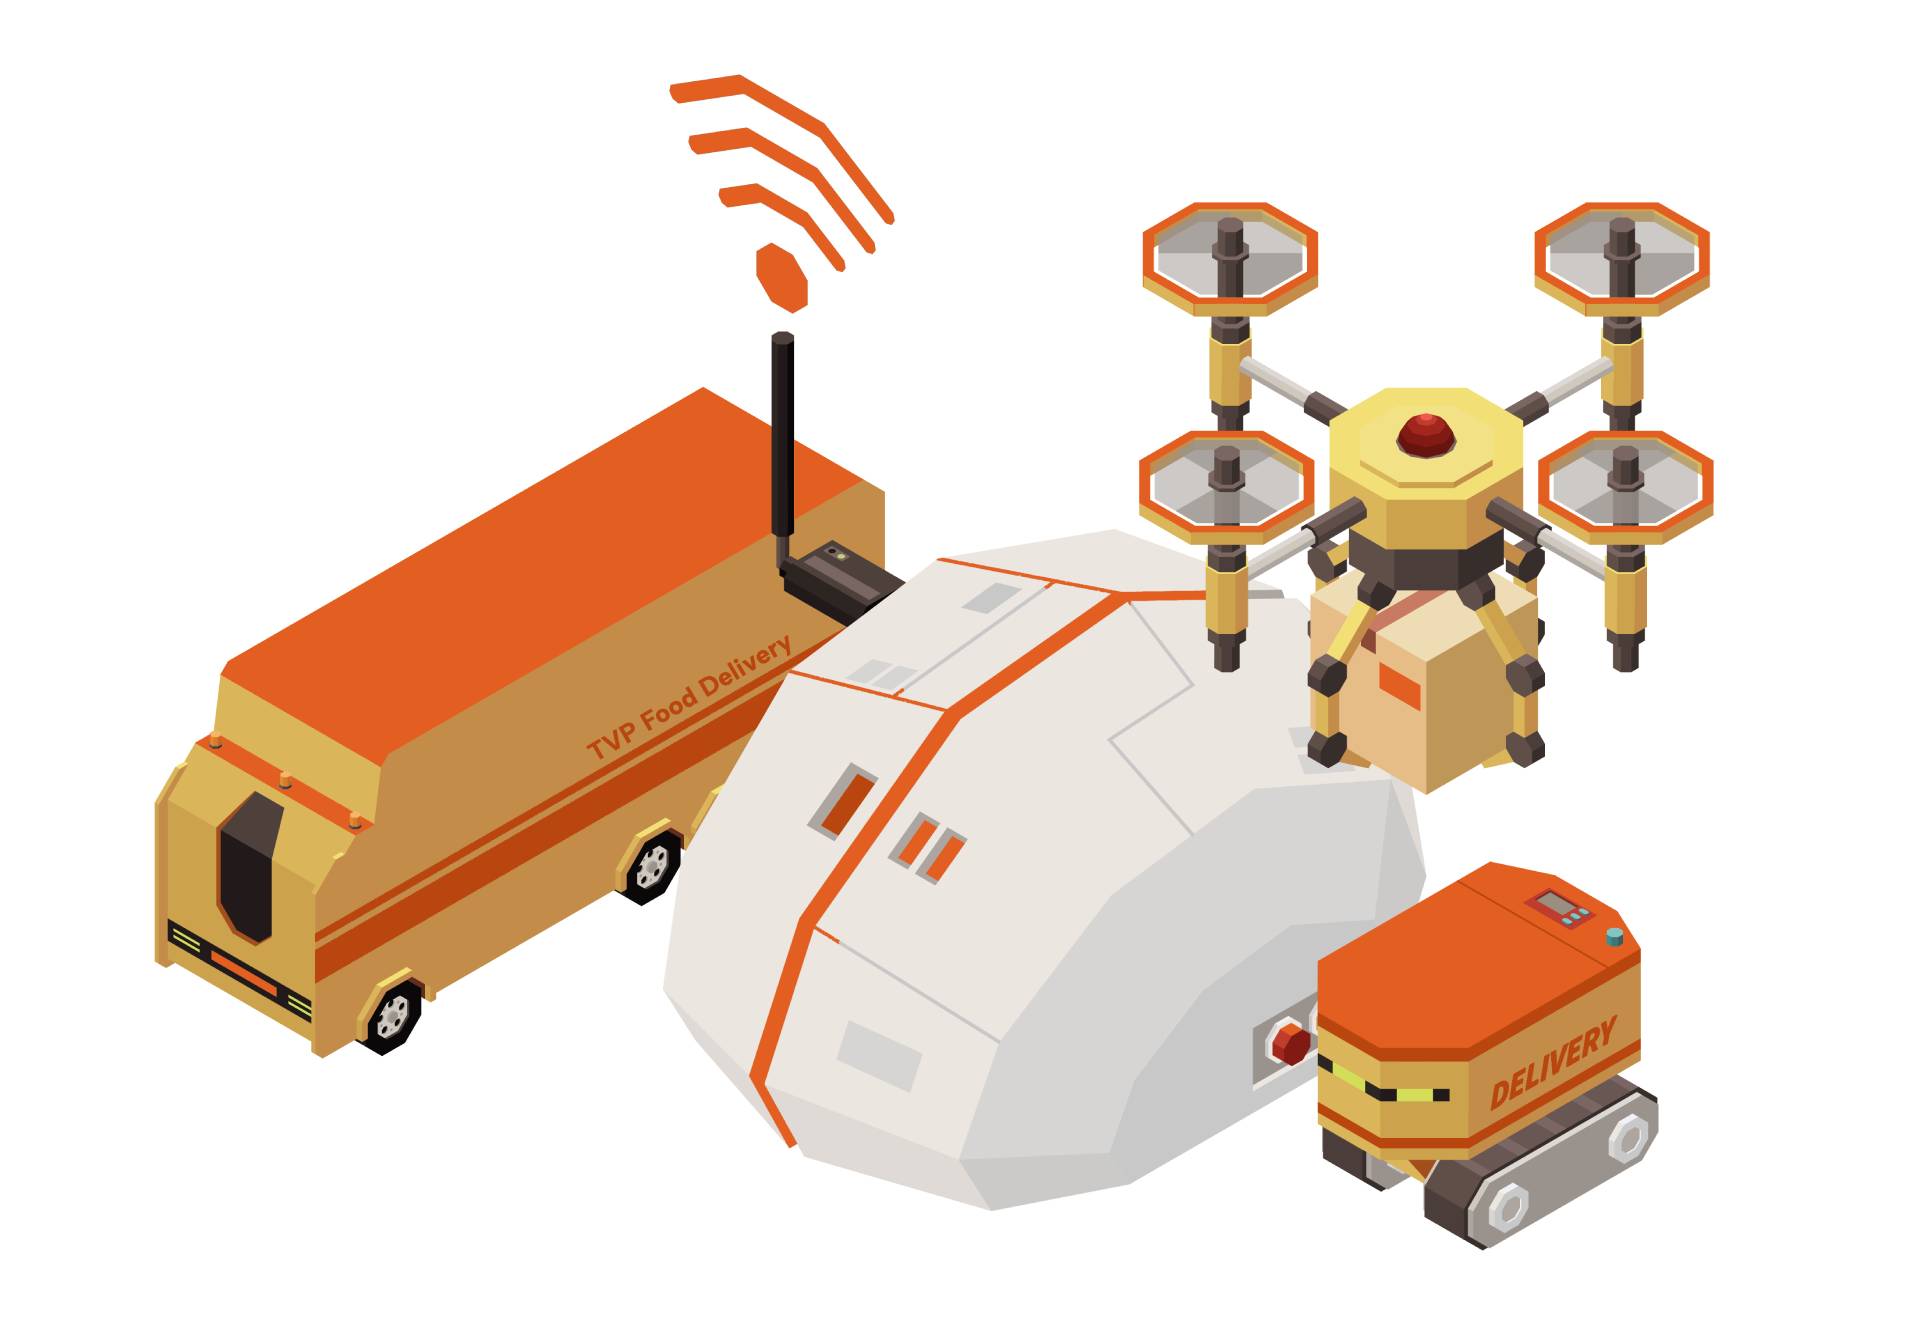 Autonomous Vehicles for Food Delivery